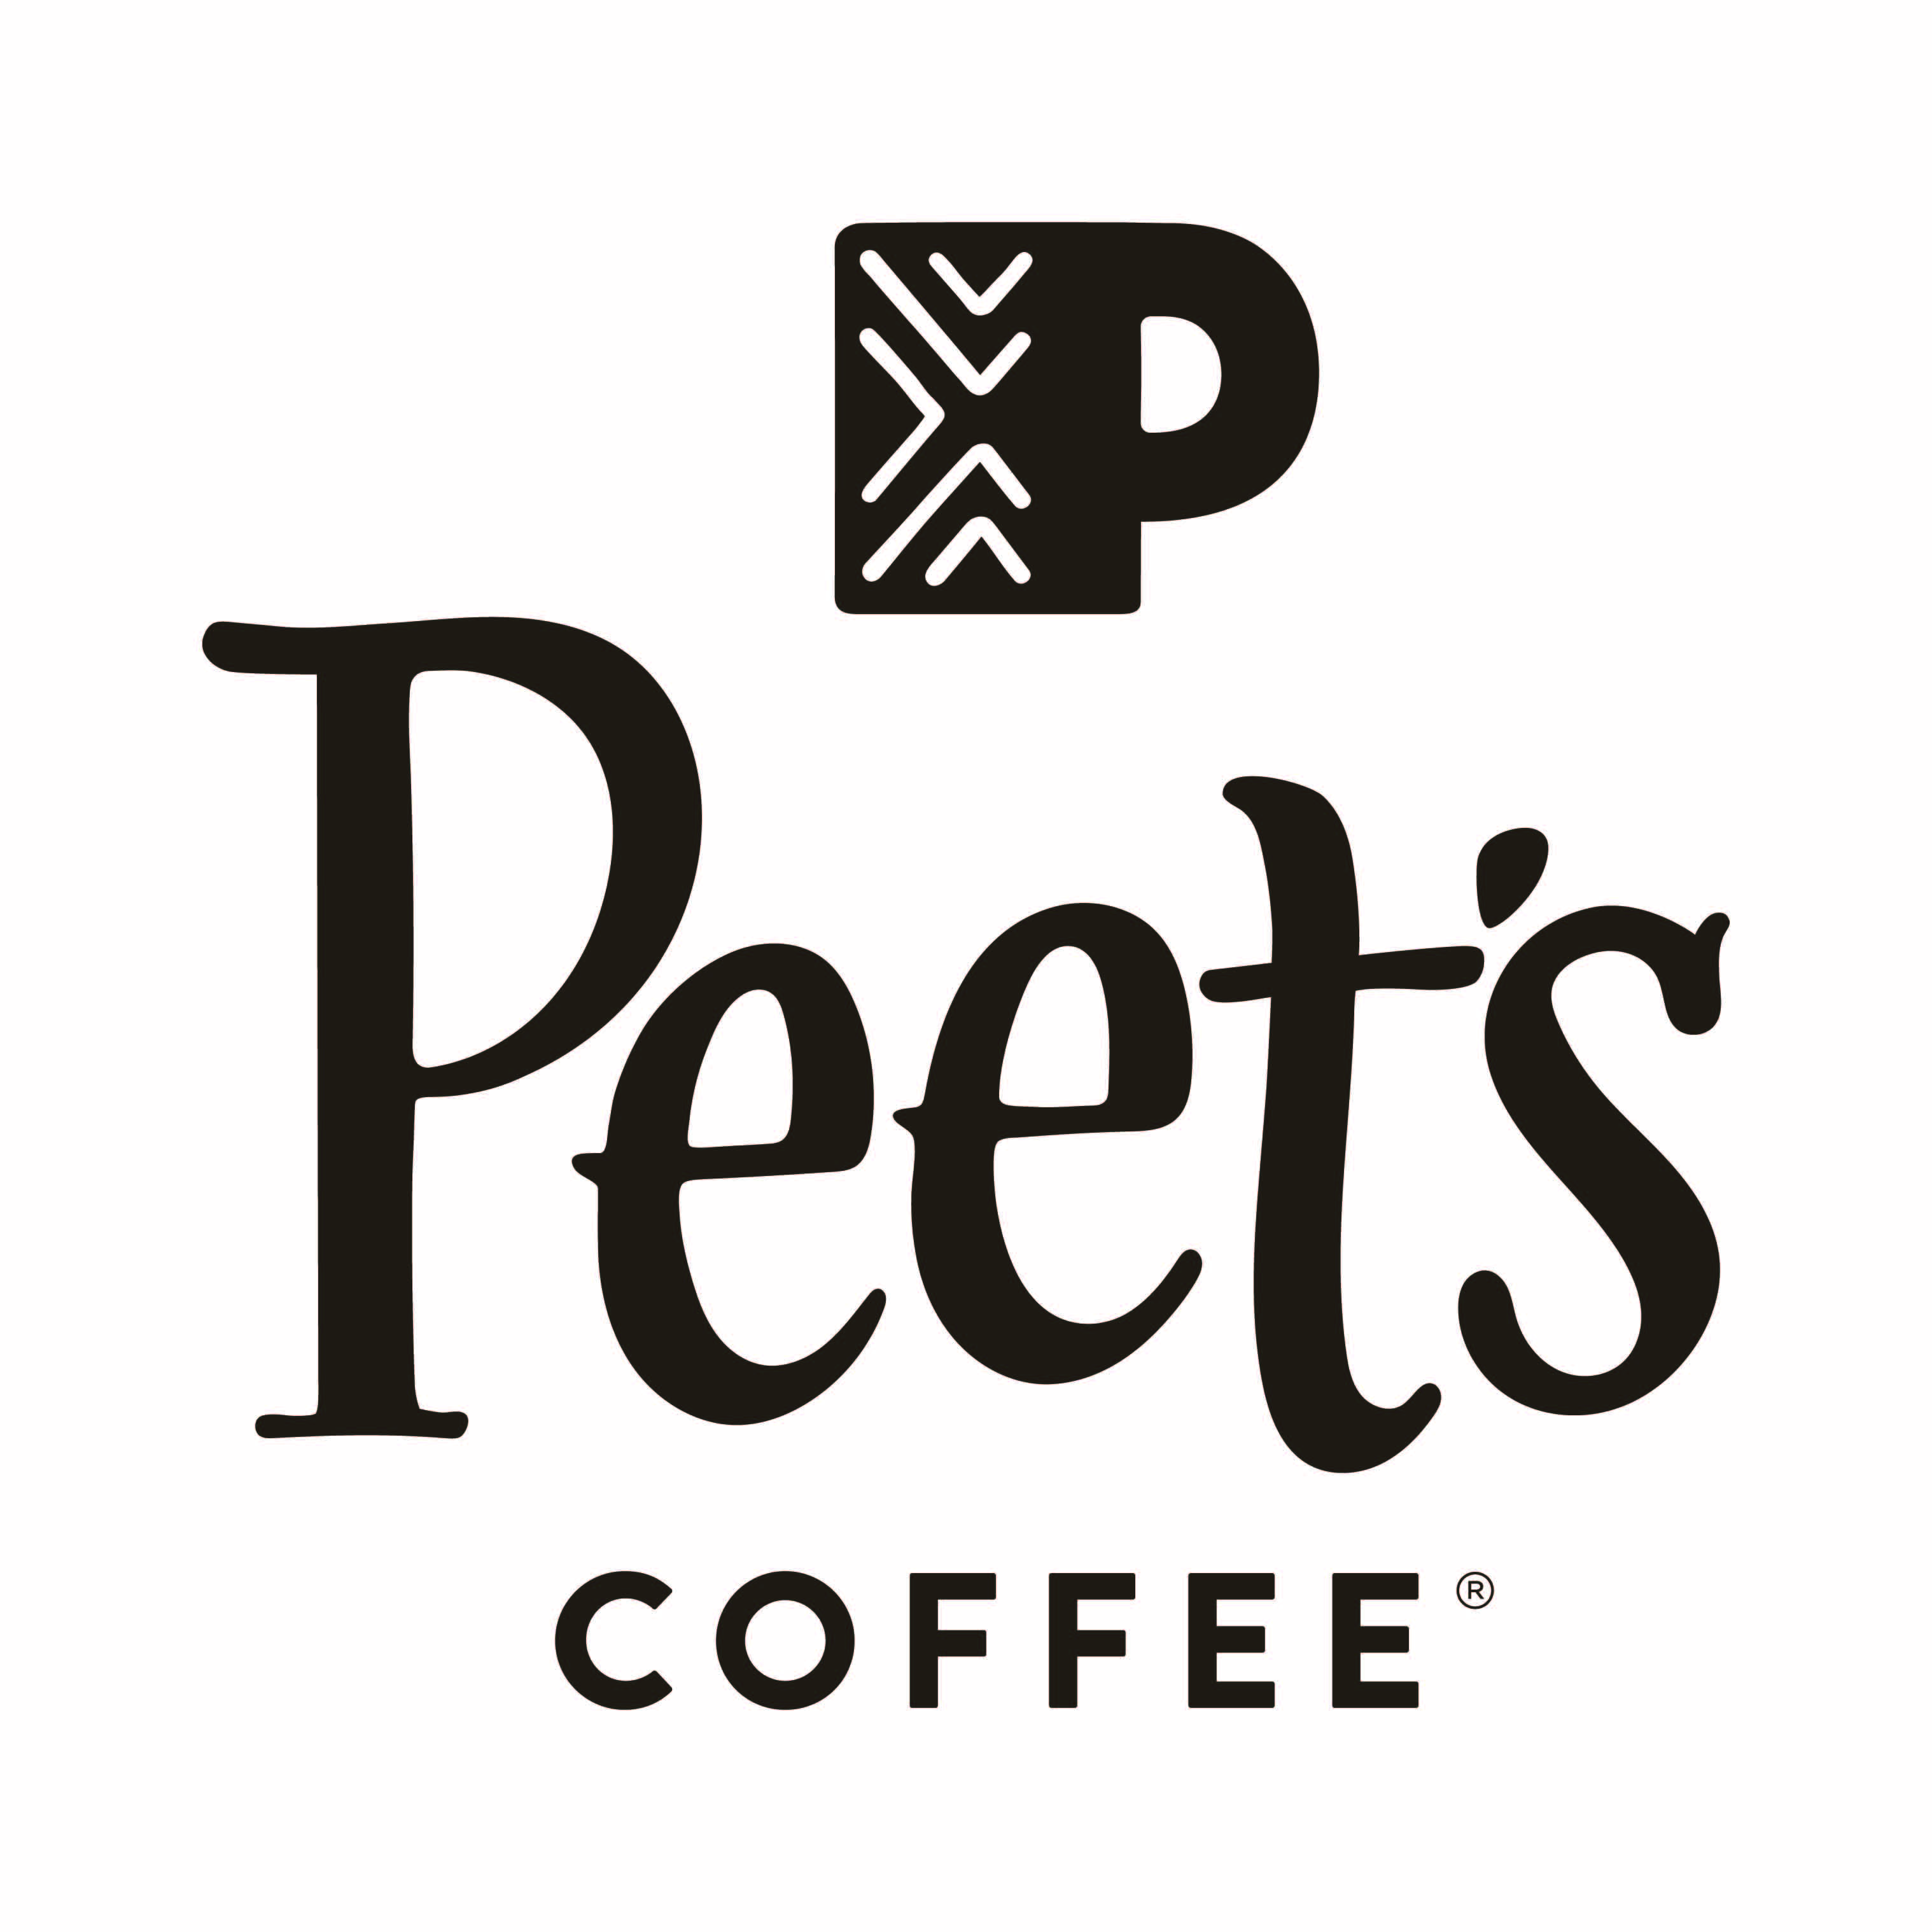 Peets logo